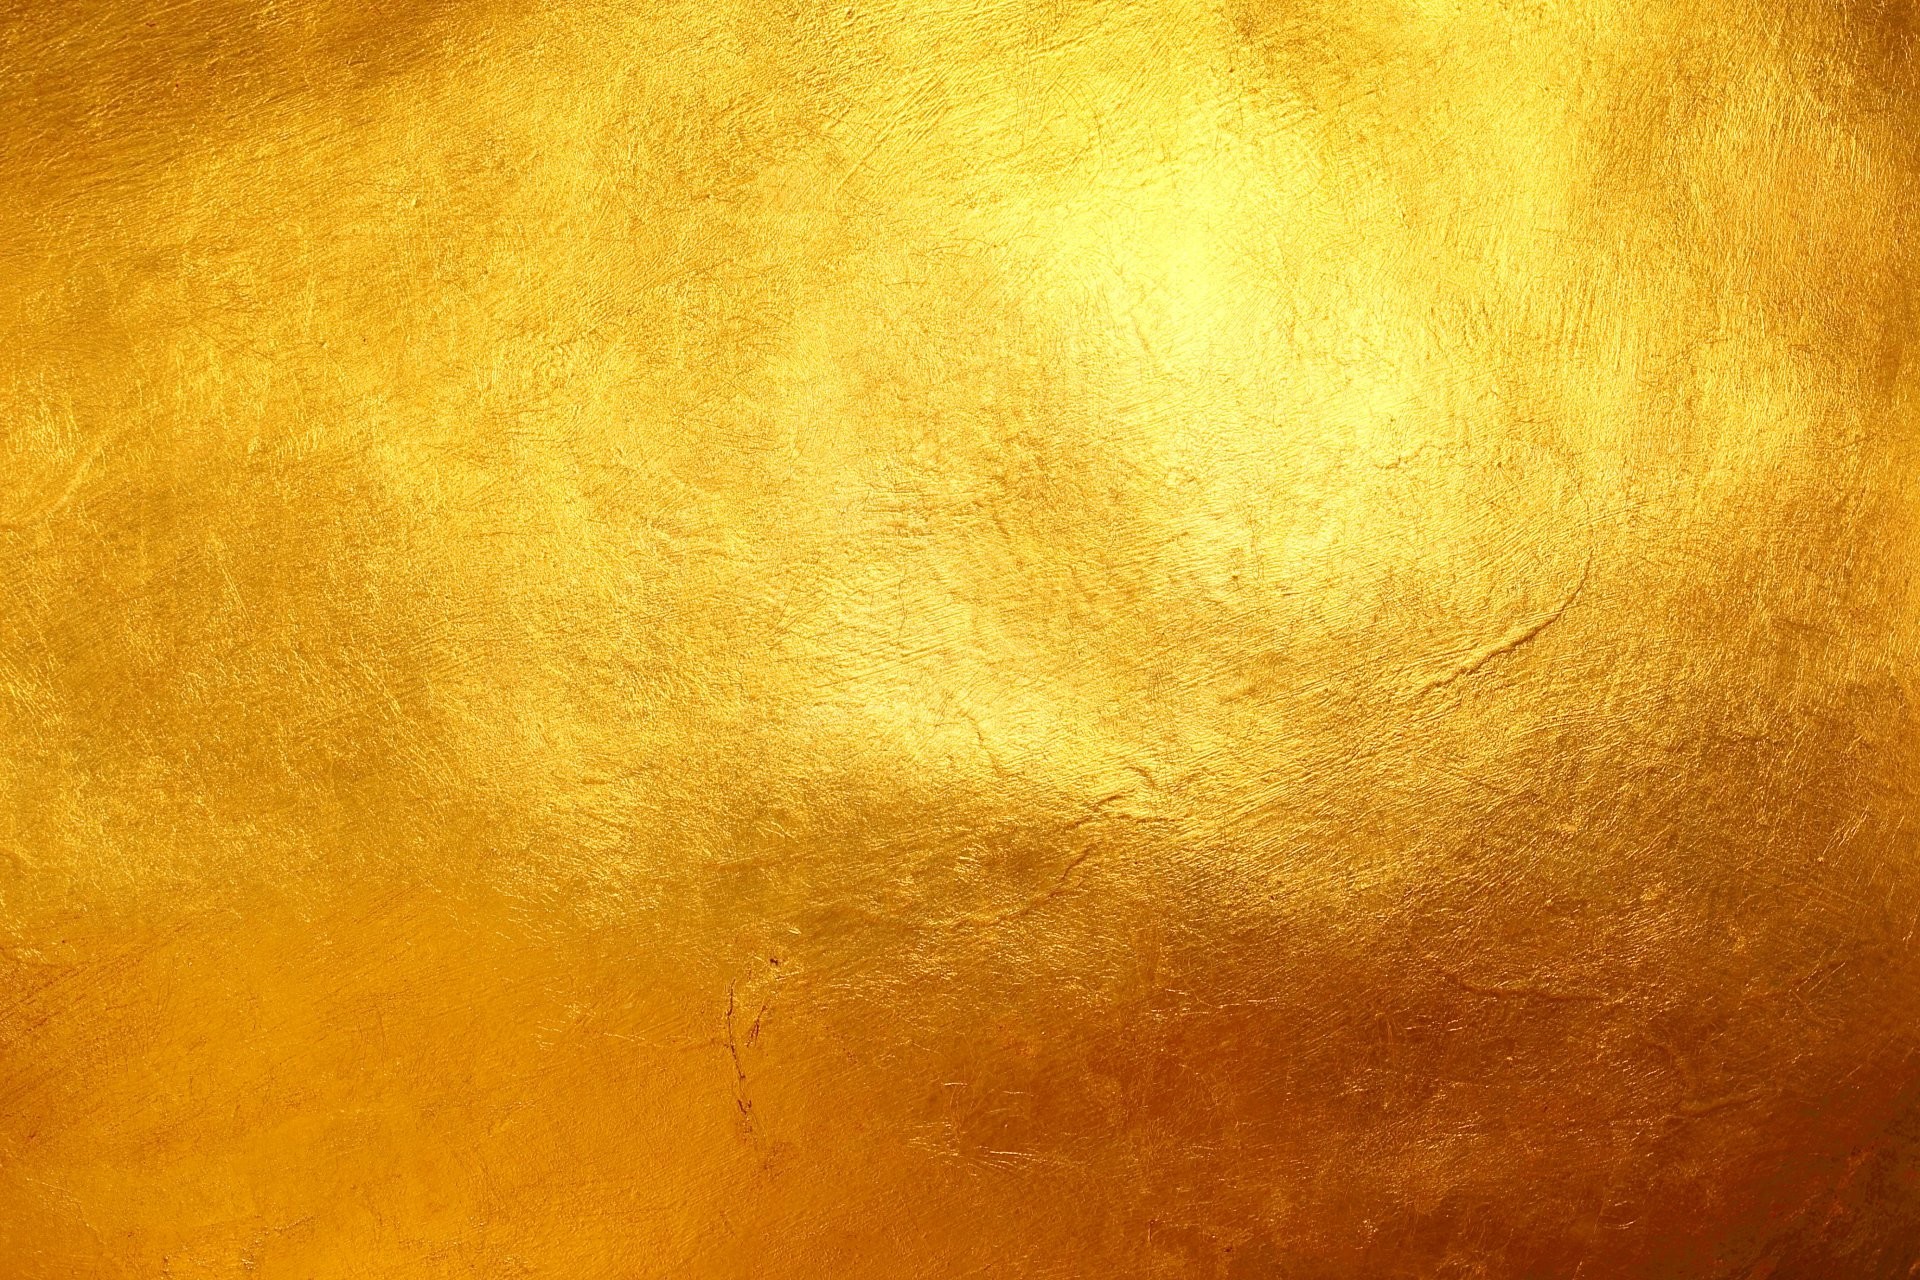 Hình nền vàng - màu sắc mang đến sự quý phái và sang trọng, tạo nên một không gian đầy tinh tế và trang trọng. Những hình nền vàng sẽ đem đến cho bạn một cảm giác sang trọng và quý phái đầy ấn tượng. Hãy cùng trải nghiệm sự tuyệt vời của những hình nền này!